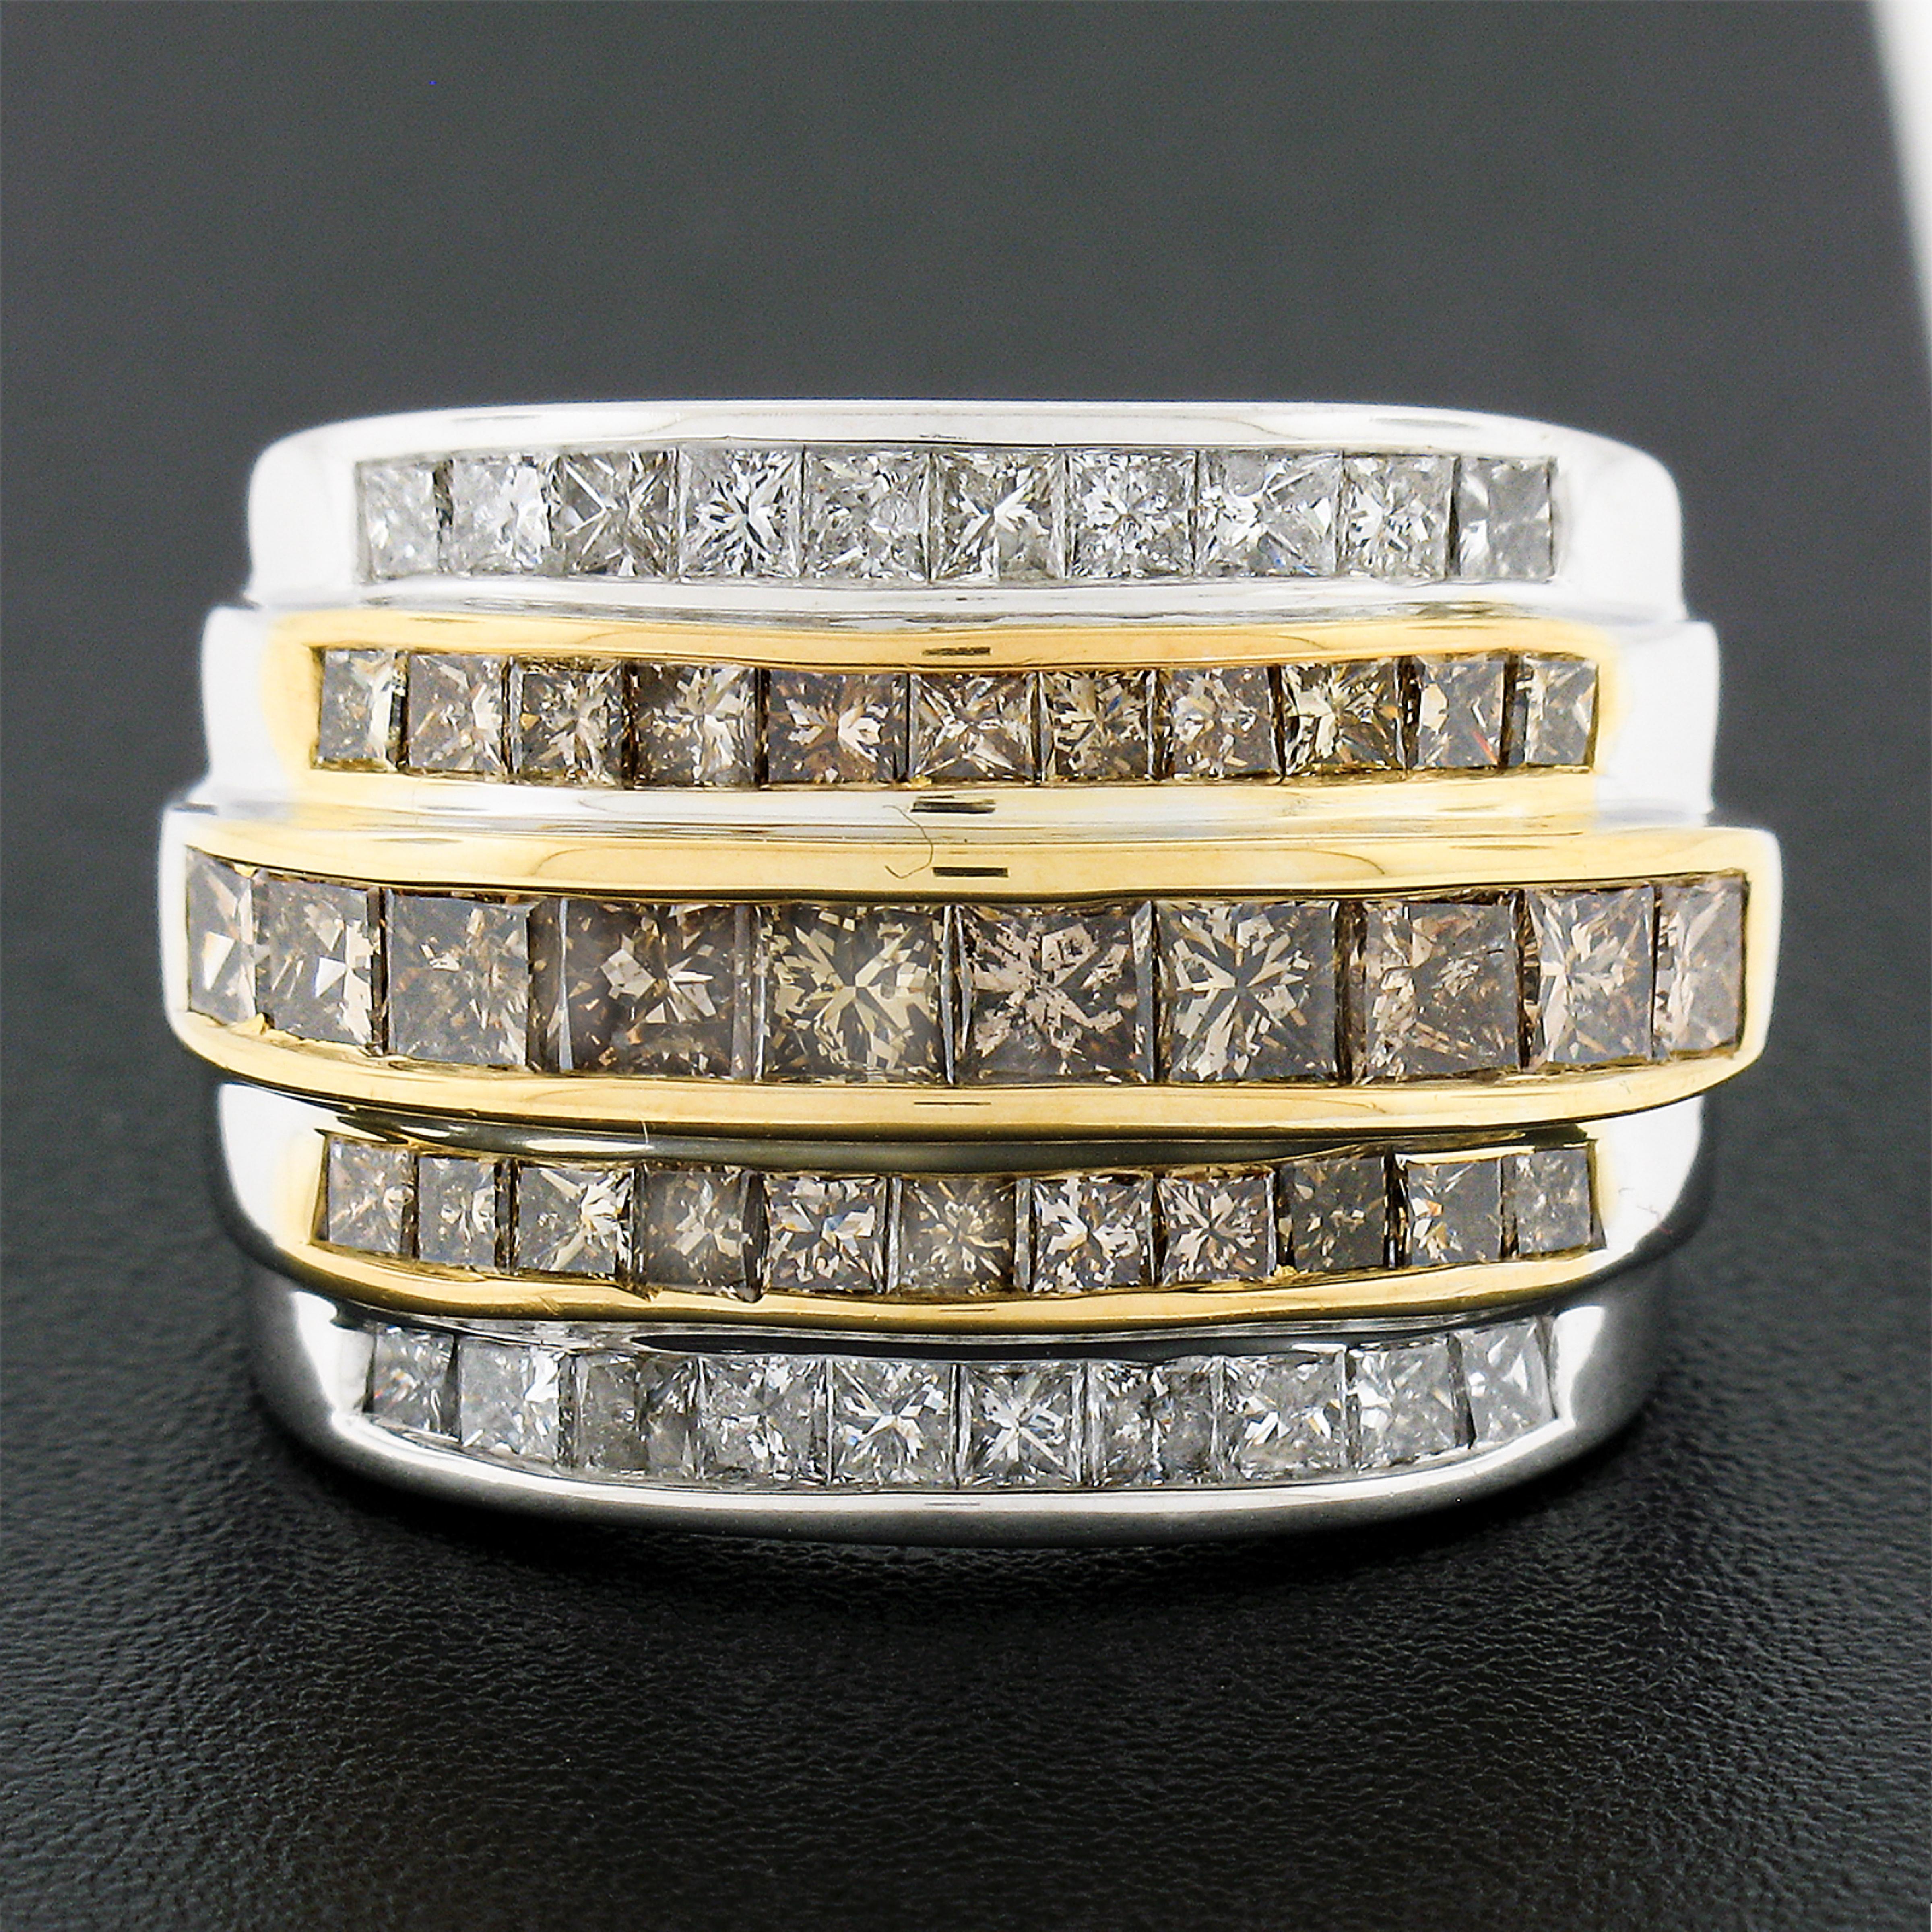 Dieser prächtige und sehr gut gemachte Diamantring wurde aus massivem 14-karätigem Weiß- und Gelbgold gefertigt und verfügt über 5 abgestufte Kanäle mit ausgefallenen gelblich-braunen und weißen Diamanten, die insgesamt etwa 3,90 Karat wiegen. Diese